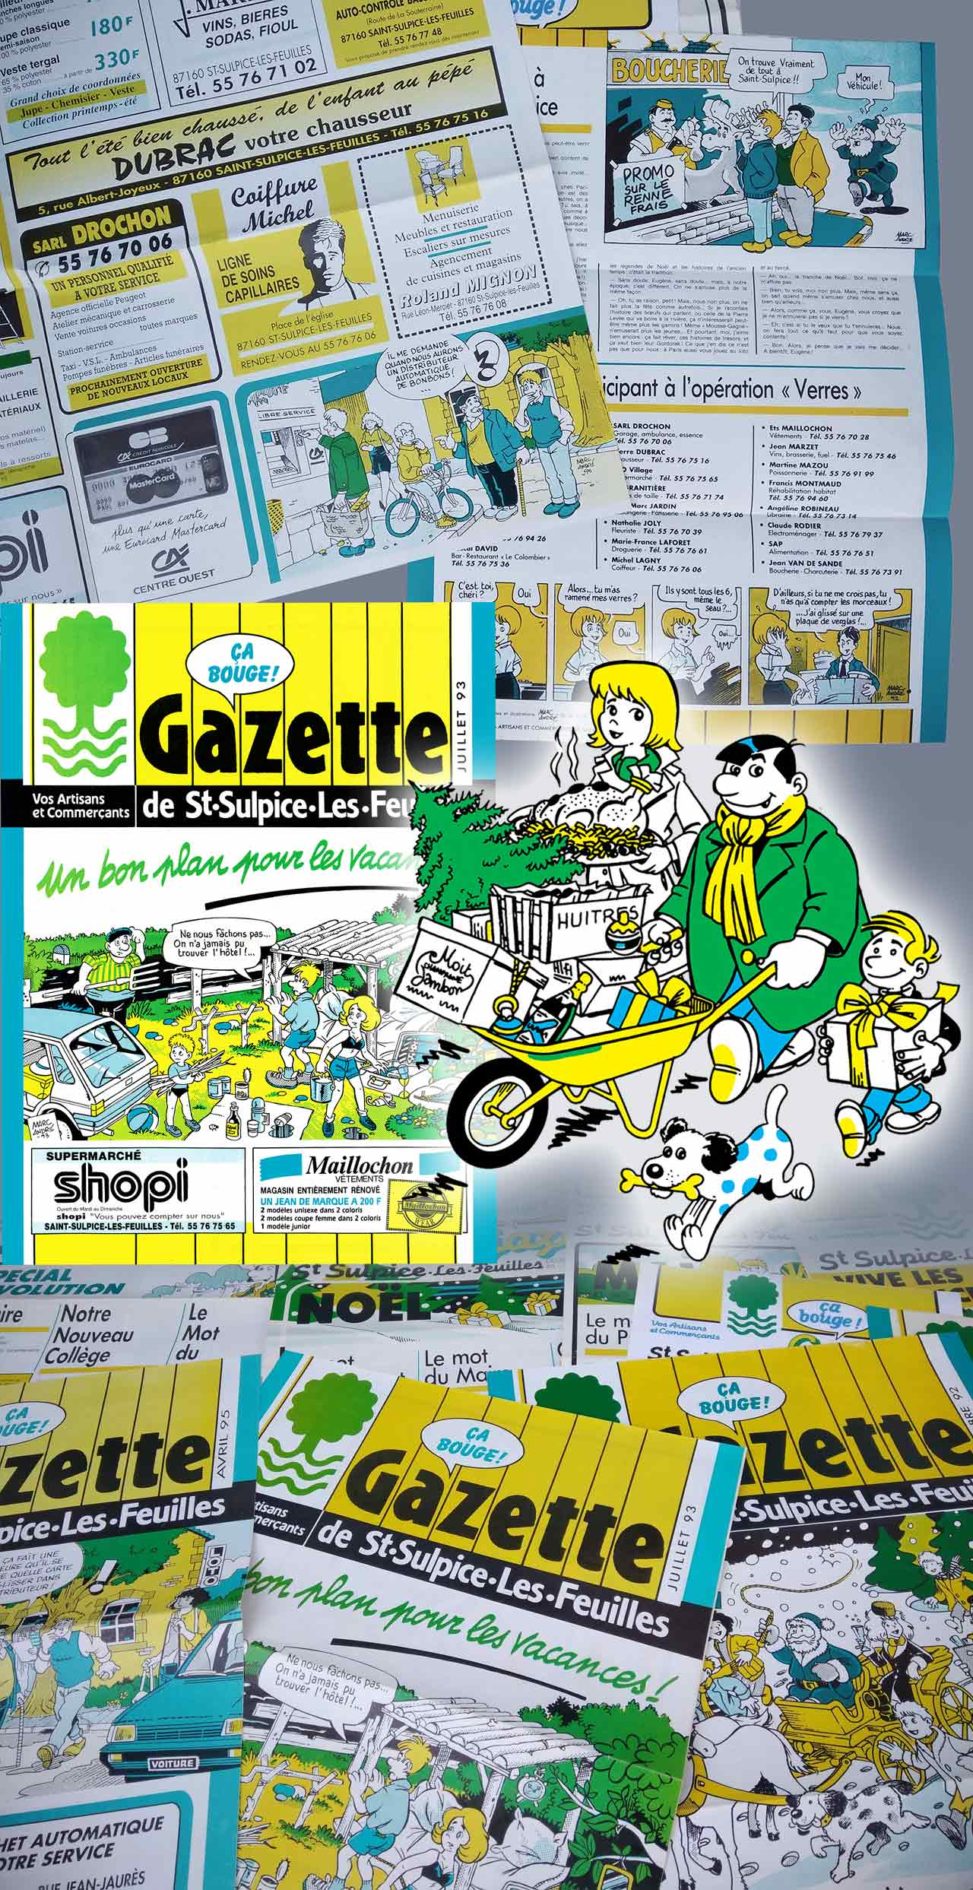 La-Gazette-de-Saint-Sulpice-les-Feuilles 1989-1995